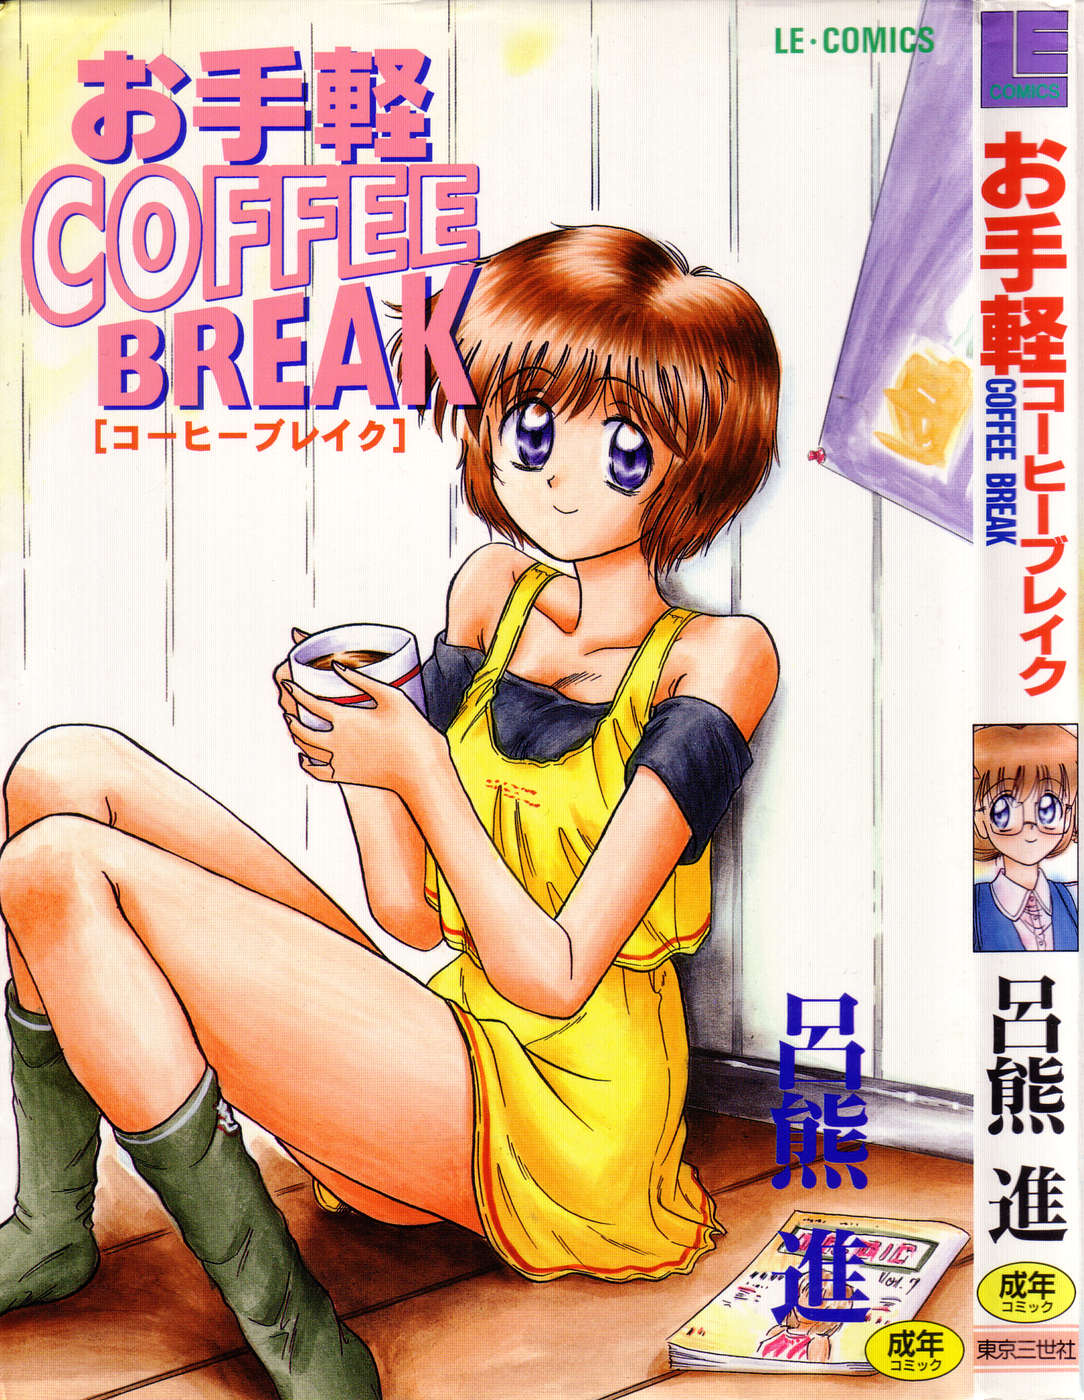 [呂熊進] Coffee break [呂熊進] お手軽コーヒーブレイク